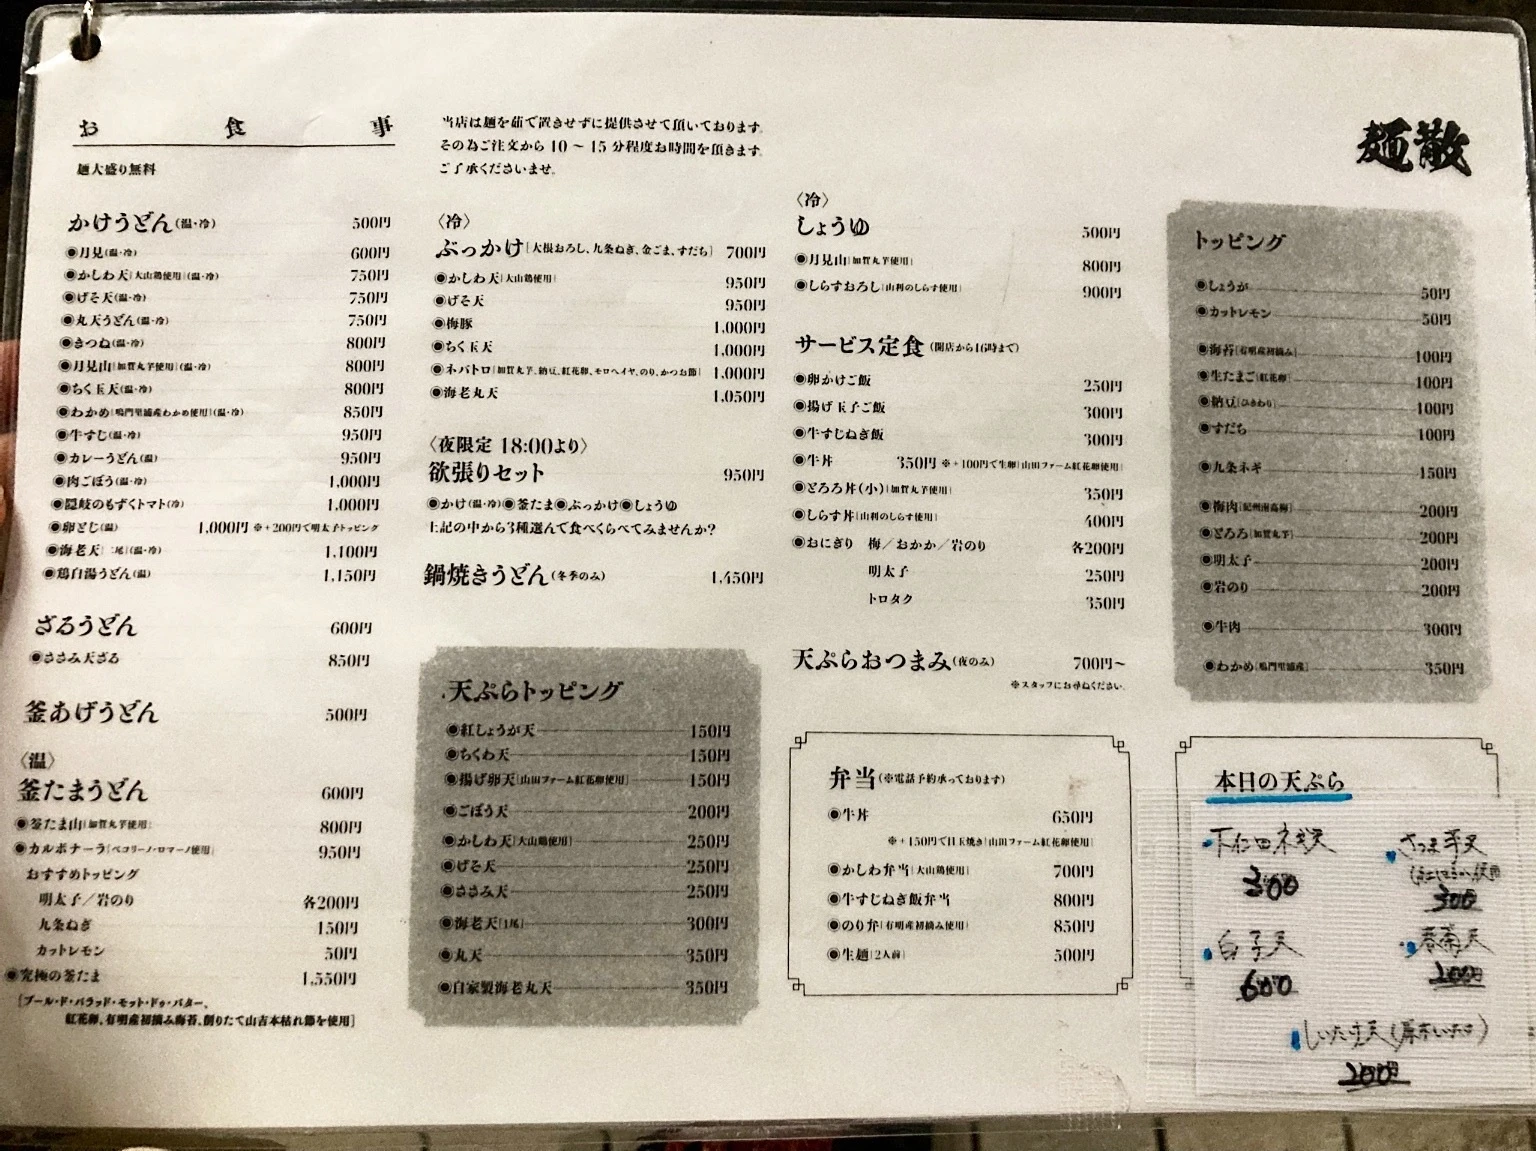 『麺散』メニュー表。うどんメニュー、トッピング、天ぷらなど。